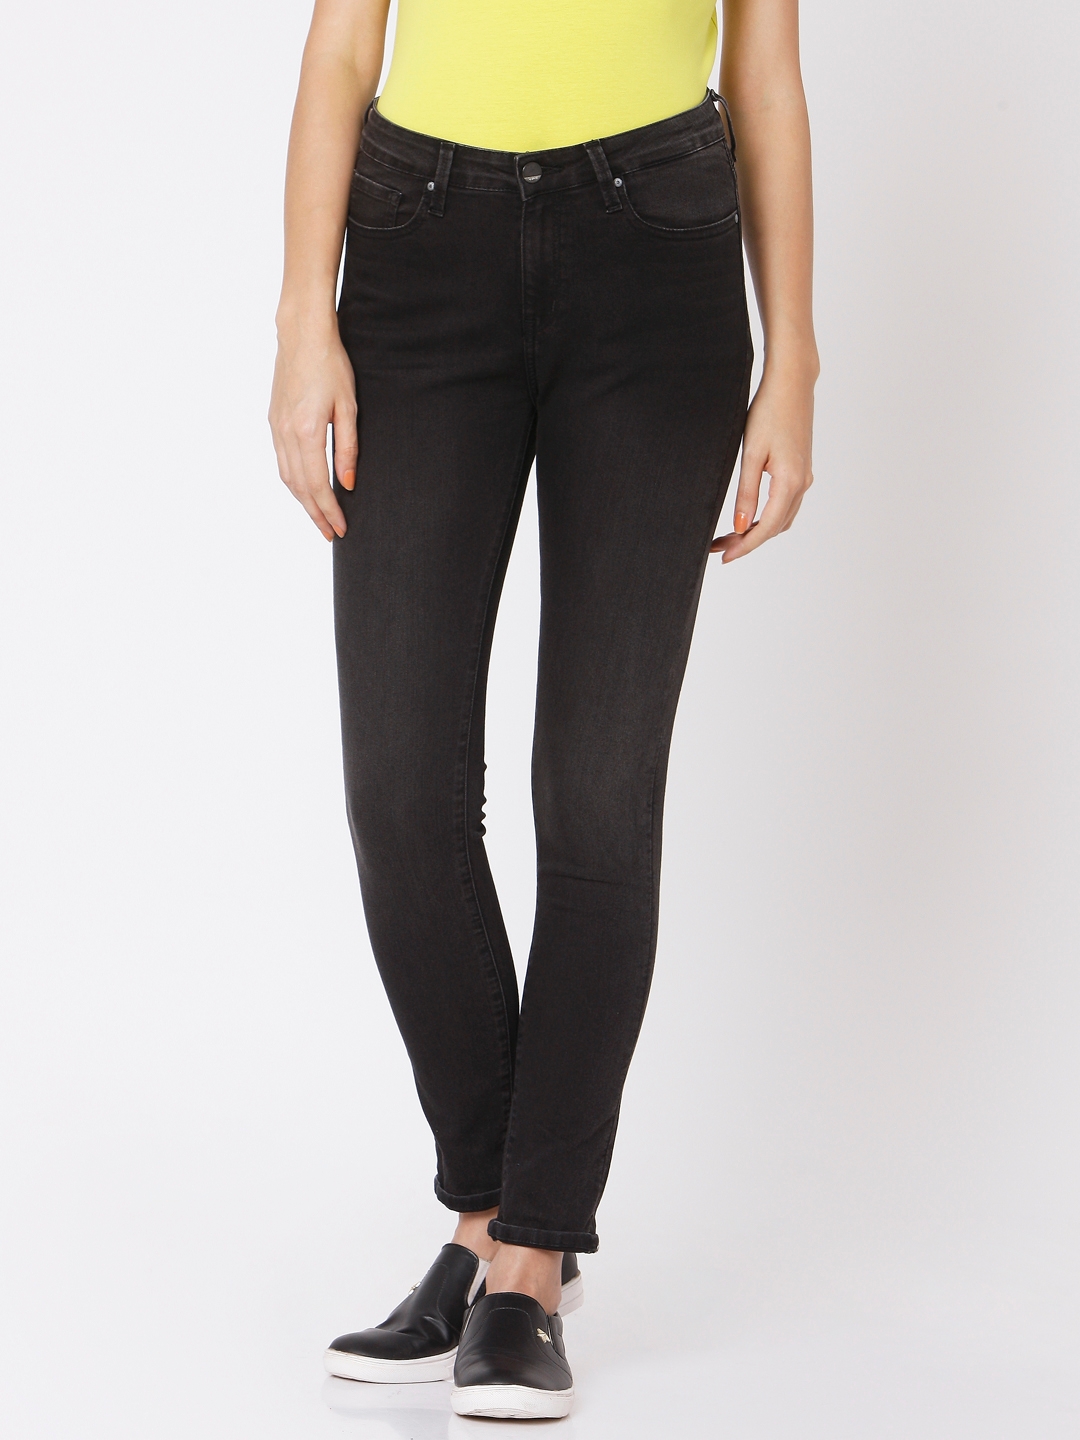 Spykar Black Cotton Skinny Fit Regular Length Jeans For Women